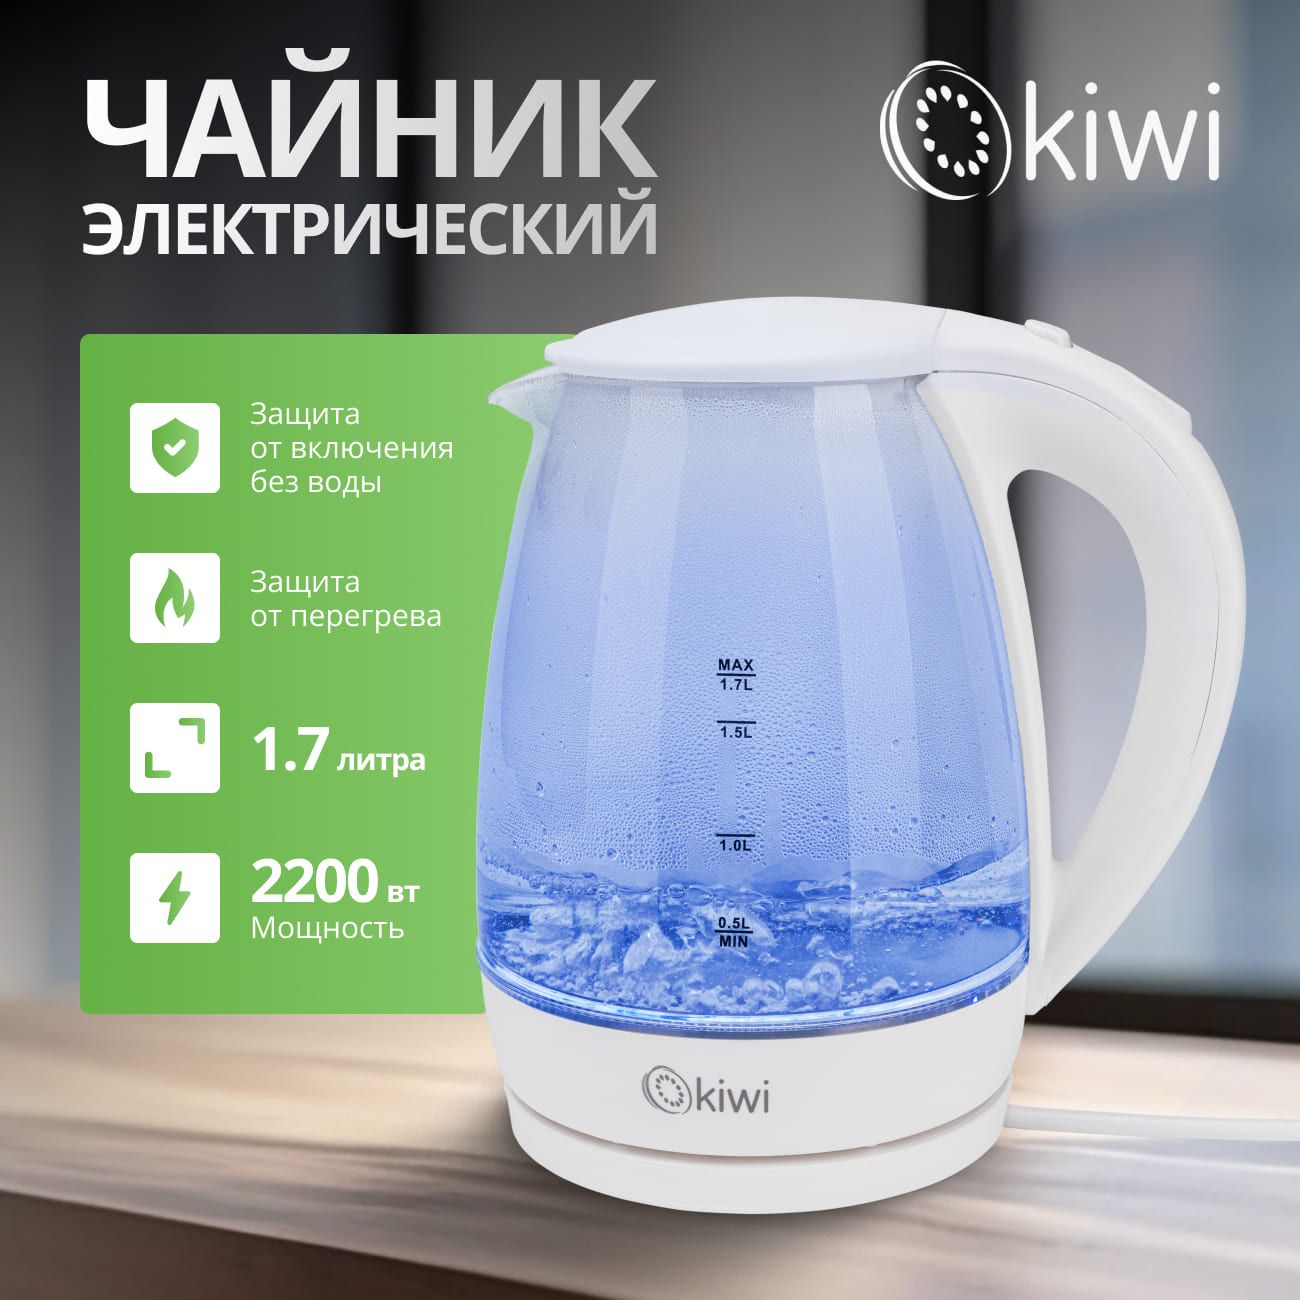 ЧайникпрозрачныйэлектрическийKIWIKK-3328W,белый,стеклянныйссинейподсветкой,1.7литра2200Вт.